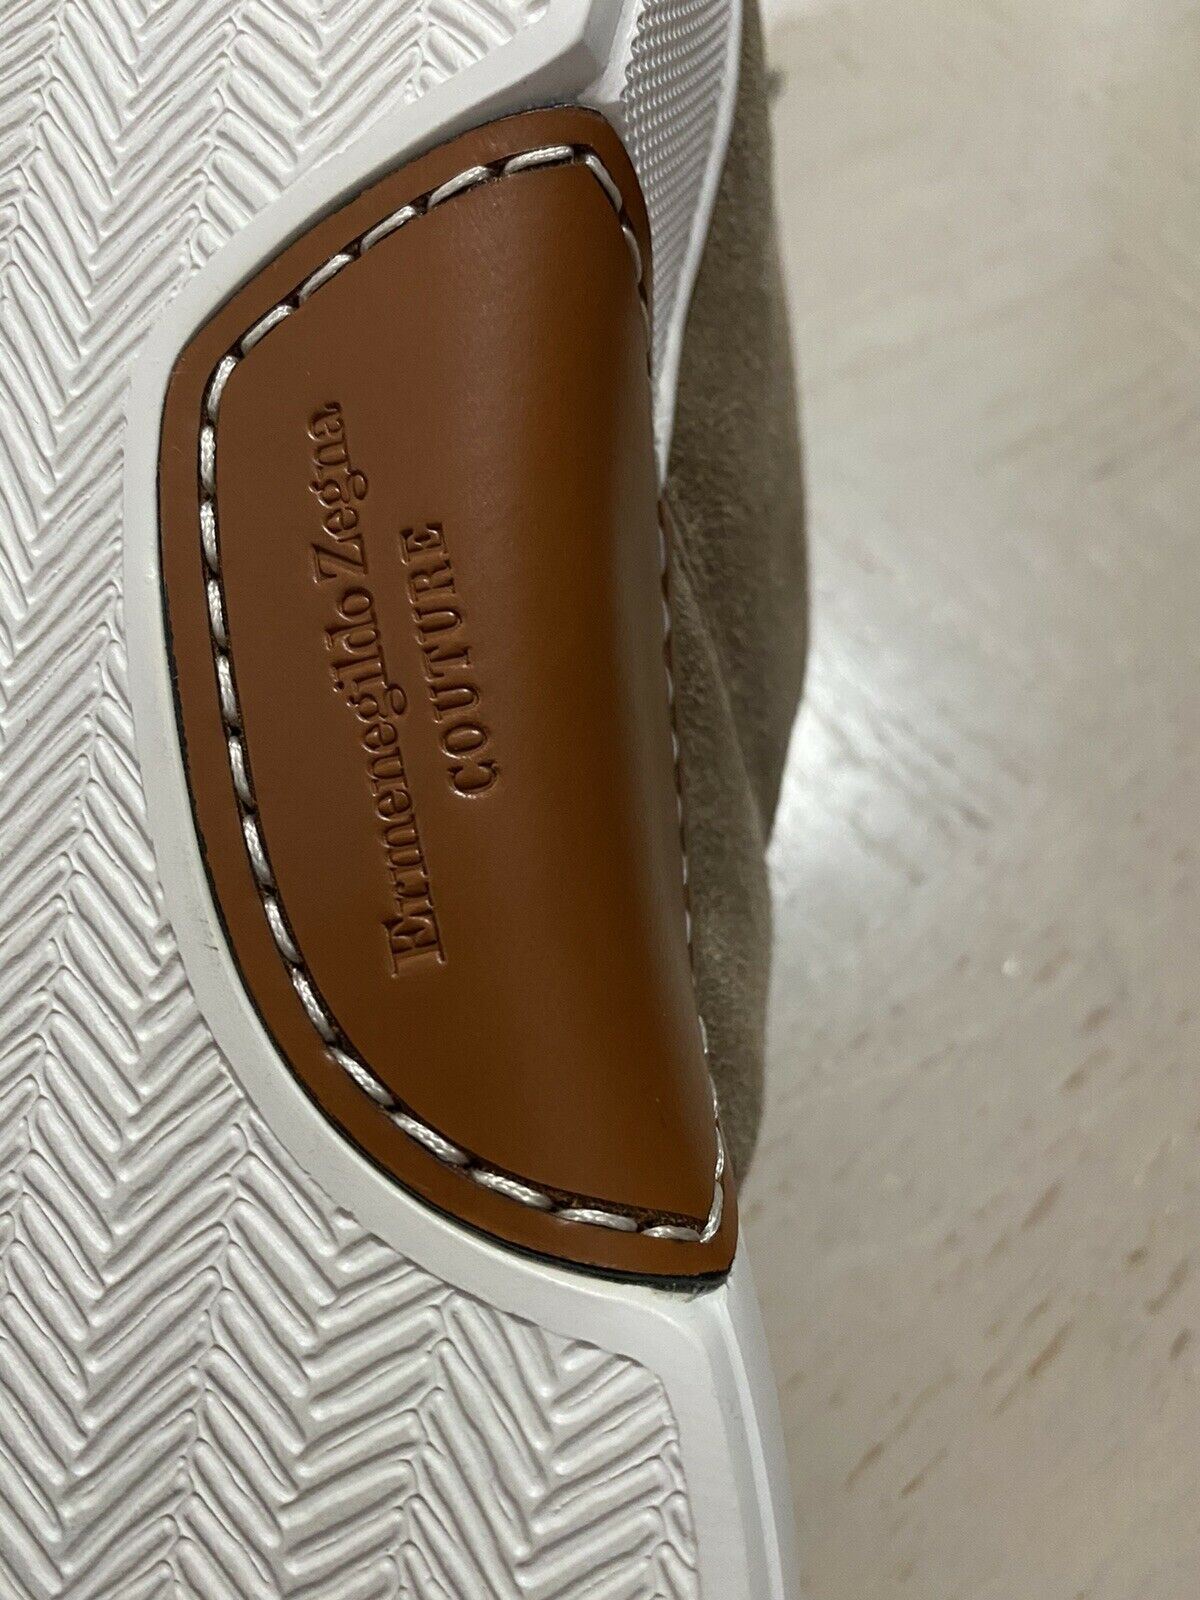 Новые замшевые/кожаные кроссовки Ermenegildo Zegna Couture за 850 долларов США LT Brown 9 US